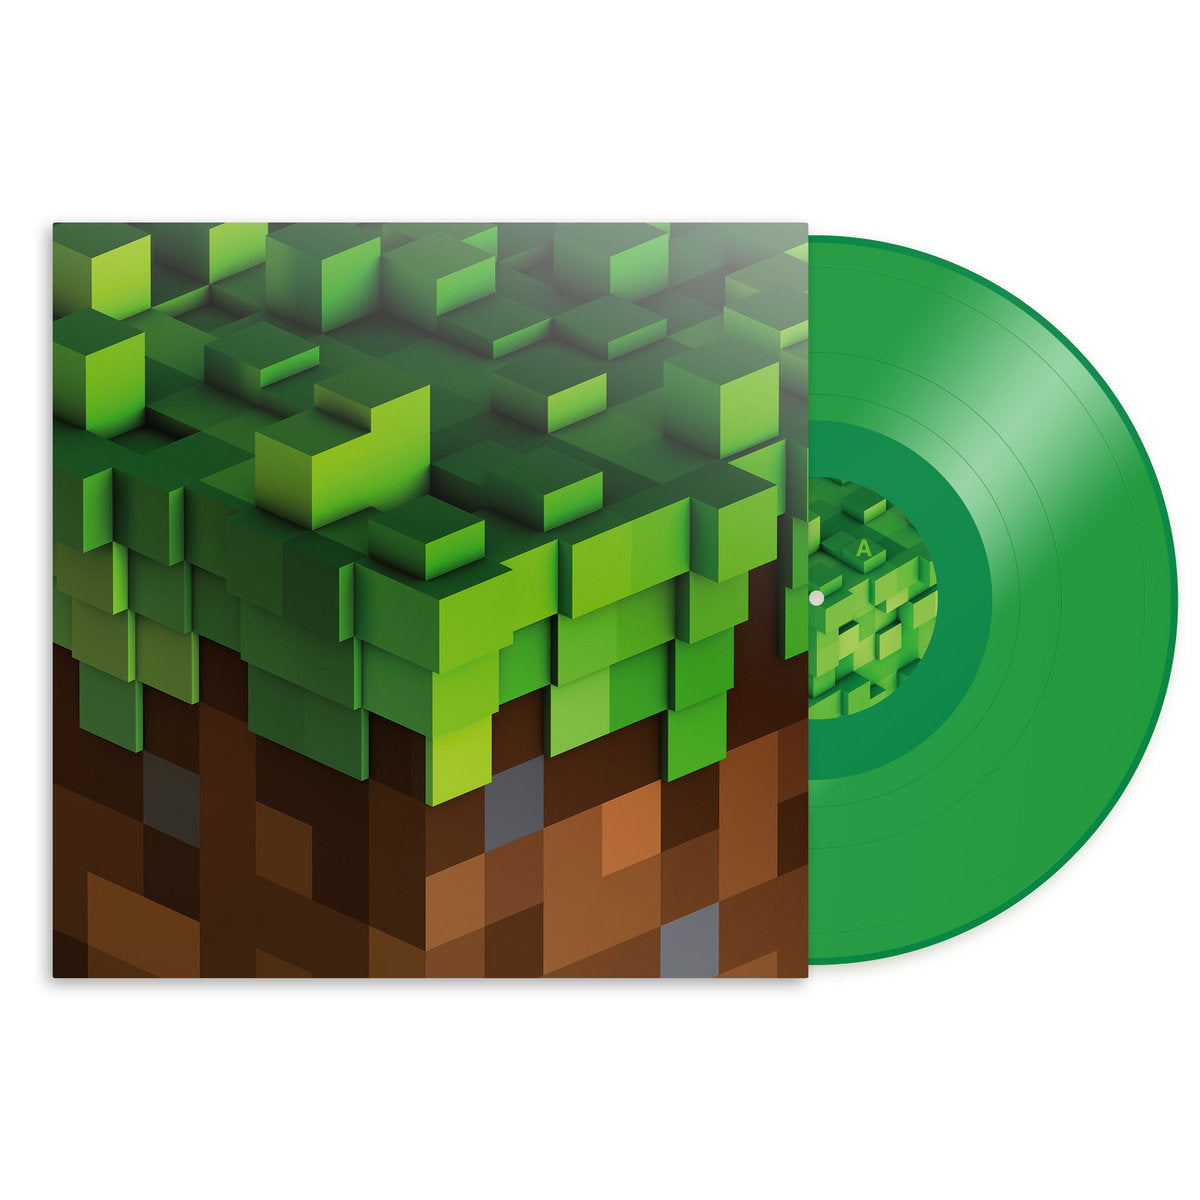 C418 - Minecraft Volume Alpha: Limited Edition Green Vinyl LP